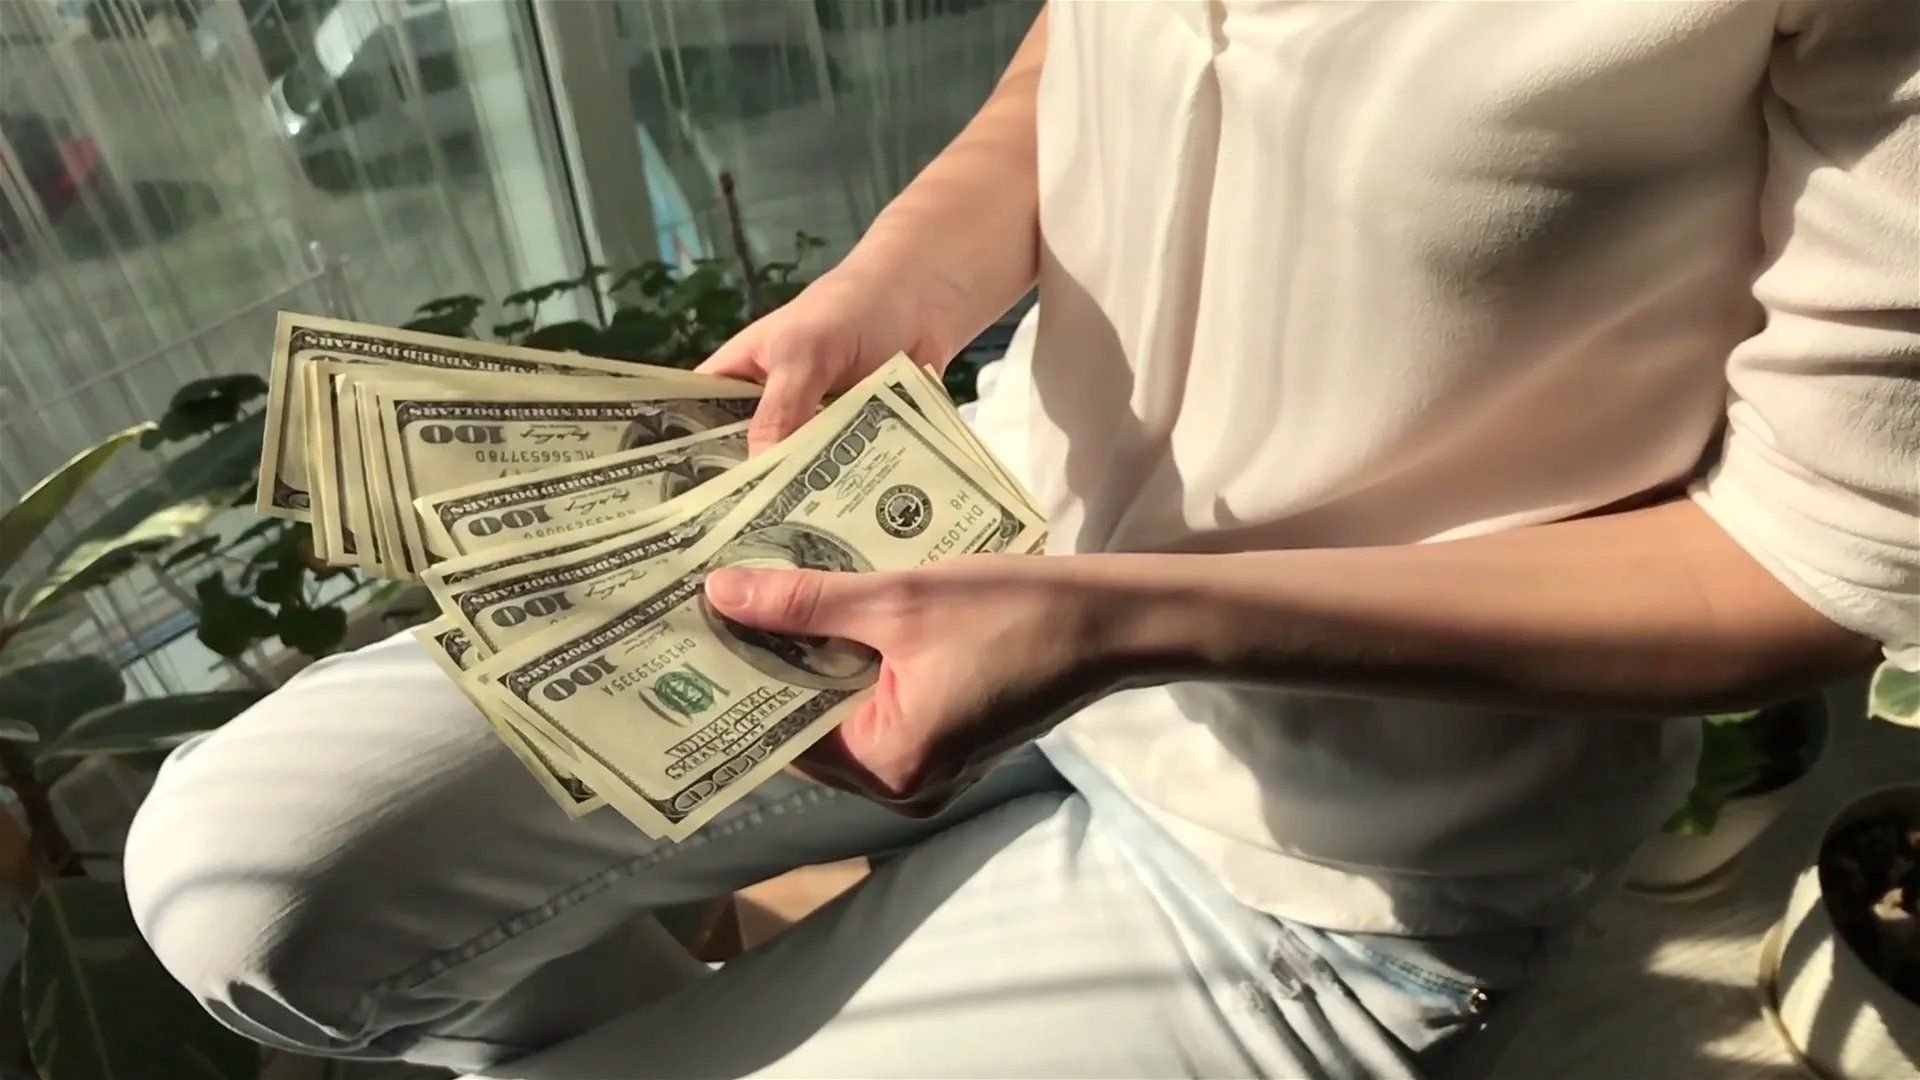 Первый доход. Деньги доллары в руках. Деньги в женских руках. Пачка долларов в руке. Пачка денег в женских руках.